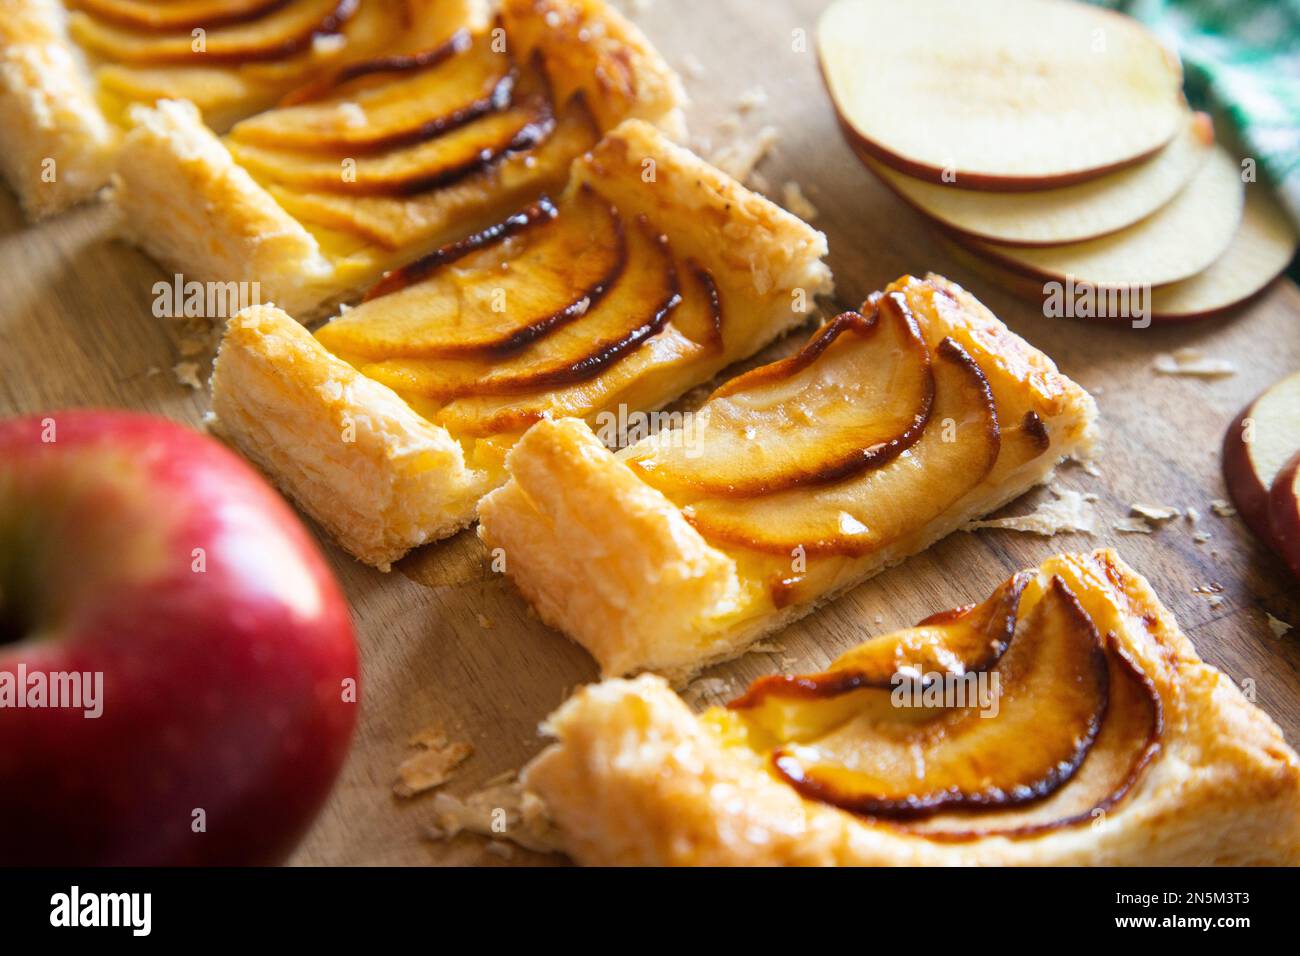 Délicieux dessert français préparé avec une pâte feuilletée remplie de pomme Banque D'Images